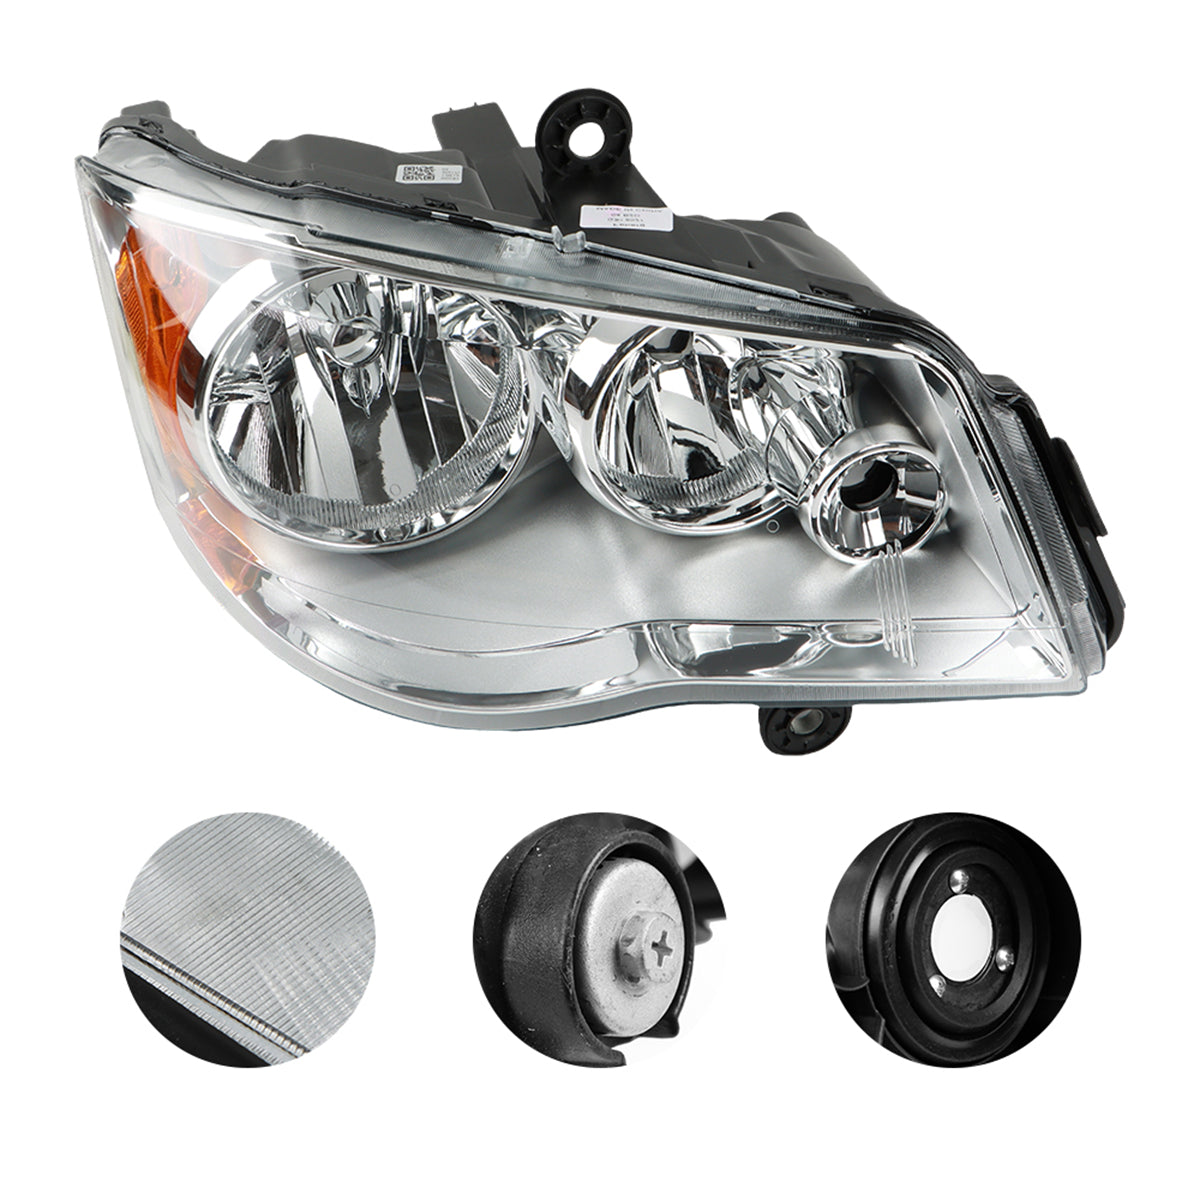 Daysyore 2pcs Headlight Assembly, Headlight Assembly for 2011 to 2018, Headlight Assembly Dodge Grand Caravan,Car Headlight Assembly